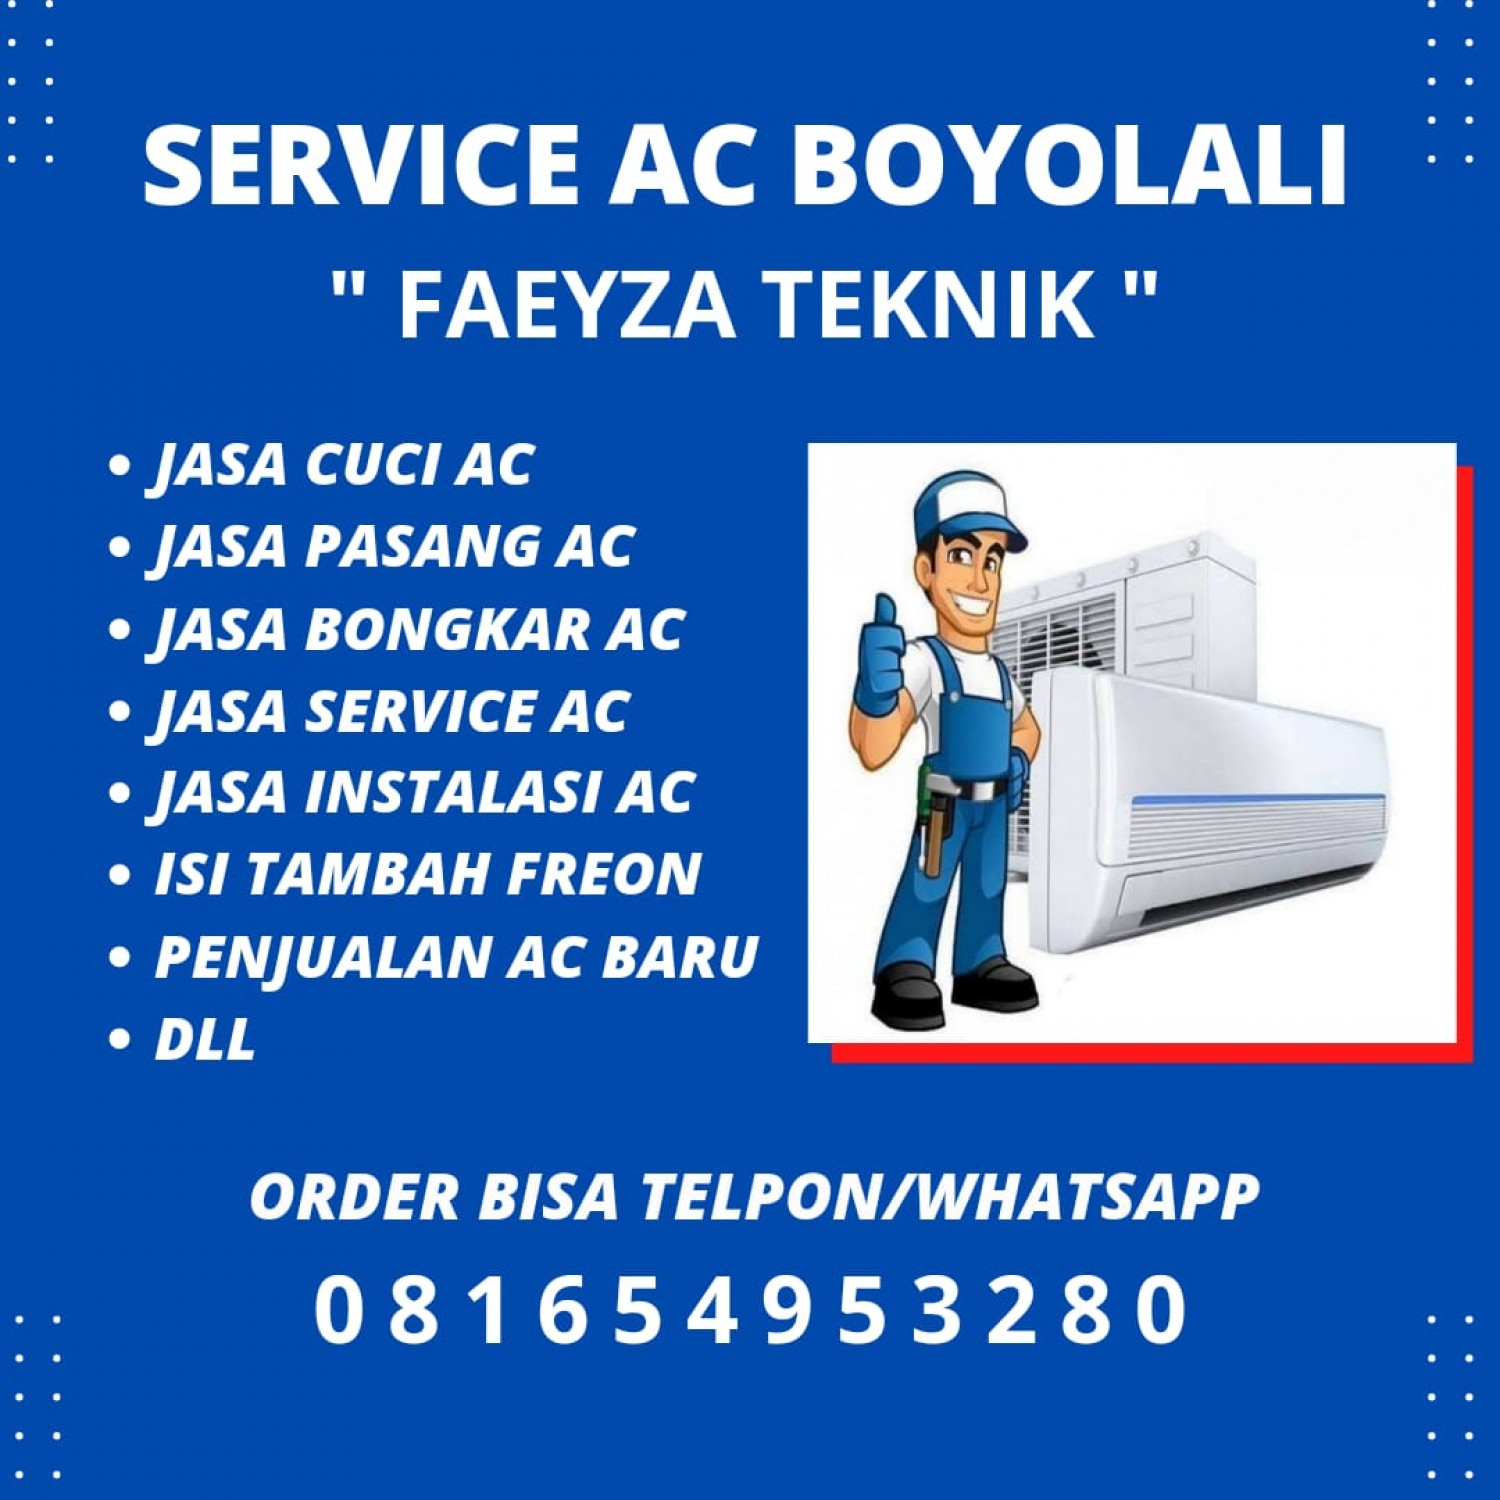 Tukang Service AC Boyolali